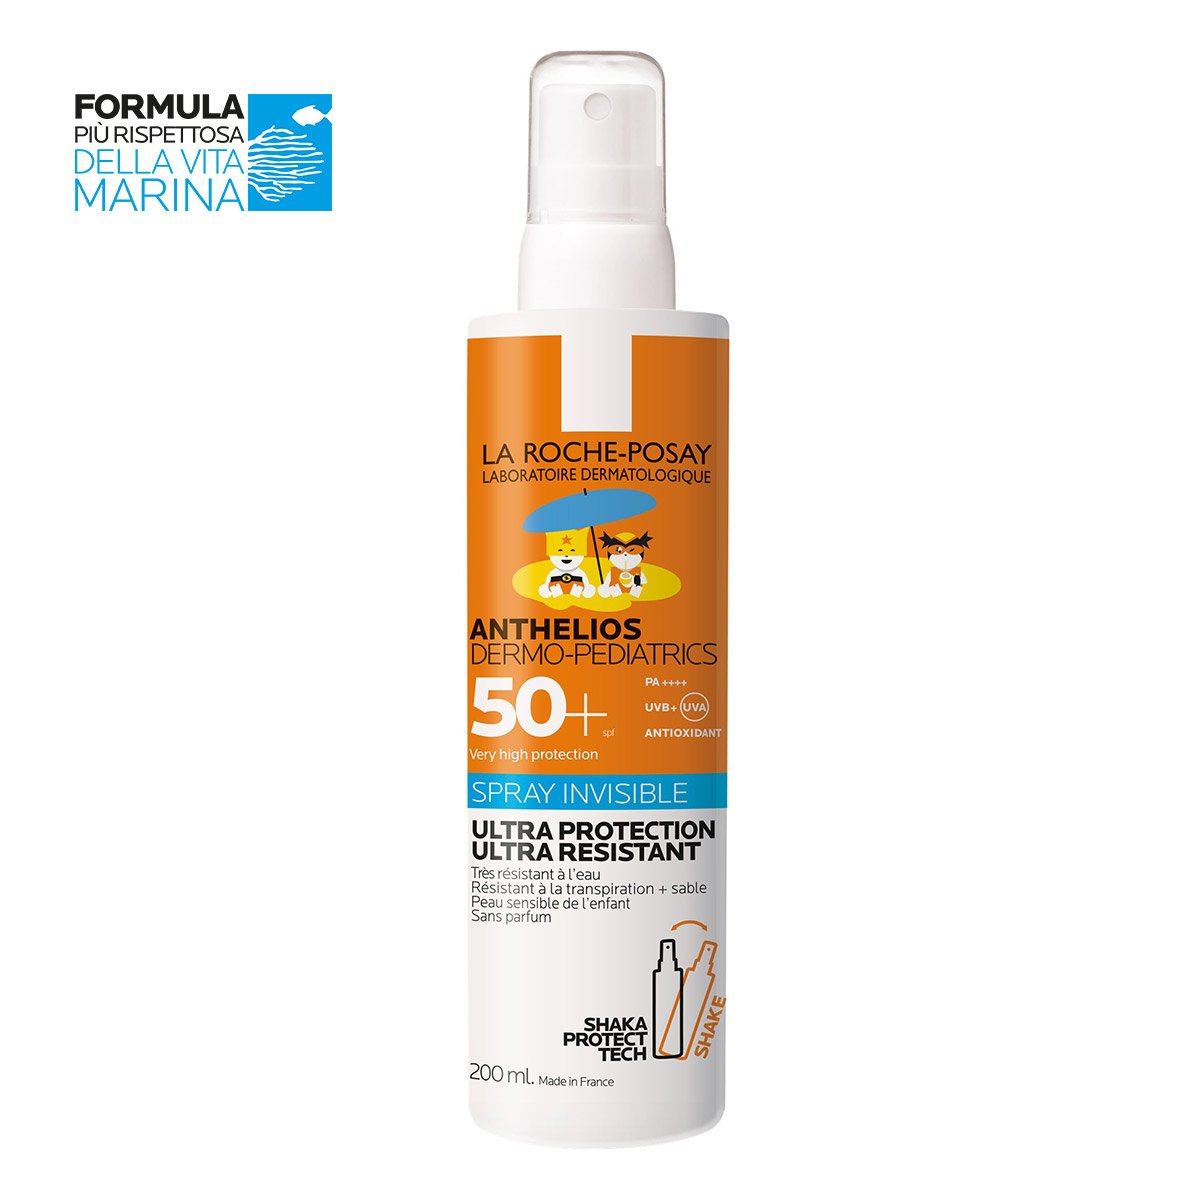 Crema Solare Anthelios Dermo Pediatrics Spray Invisible SPF50+ La Roche-Posay